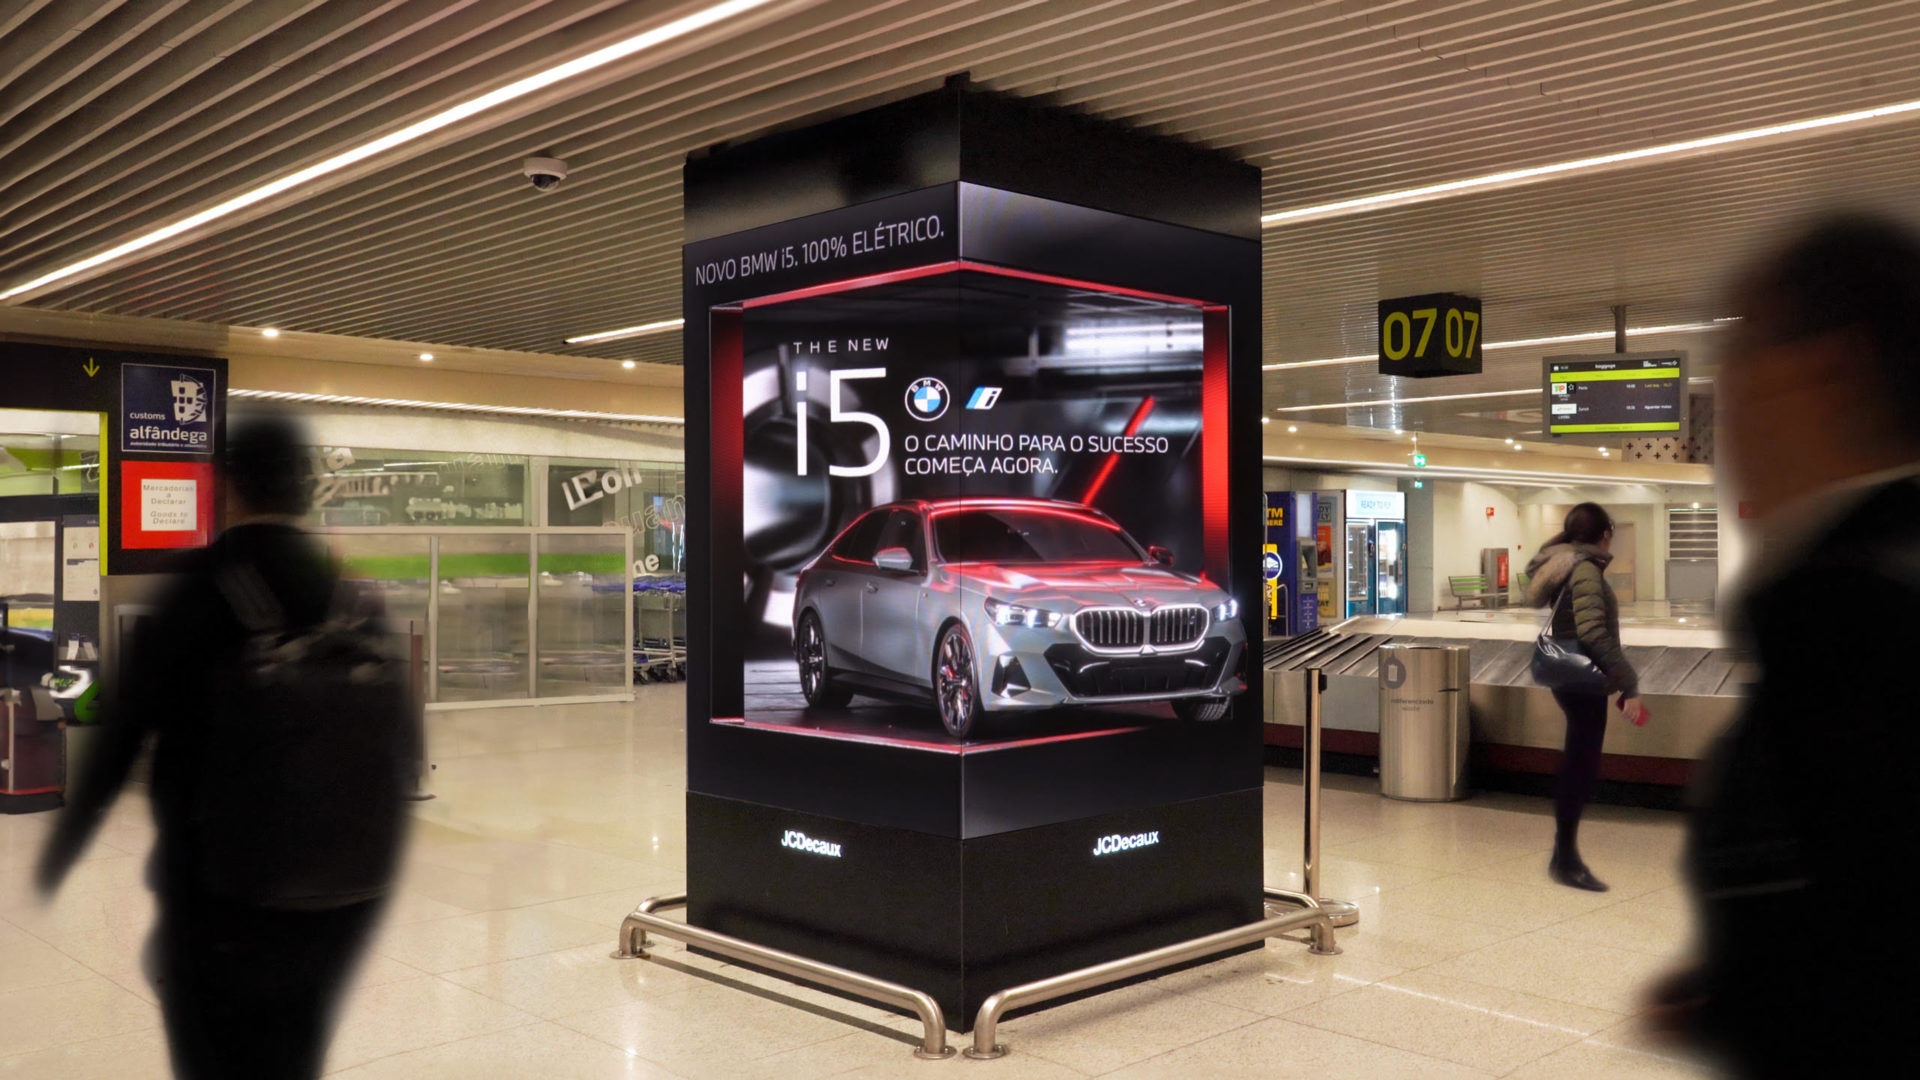 BMW estreia novo suporte anamórfico 3D da JCDecaux no aeroporto de Lisboa (com vídeo)